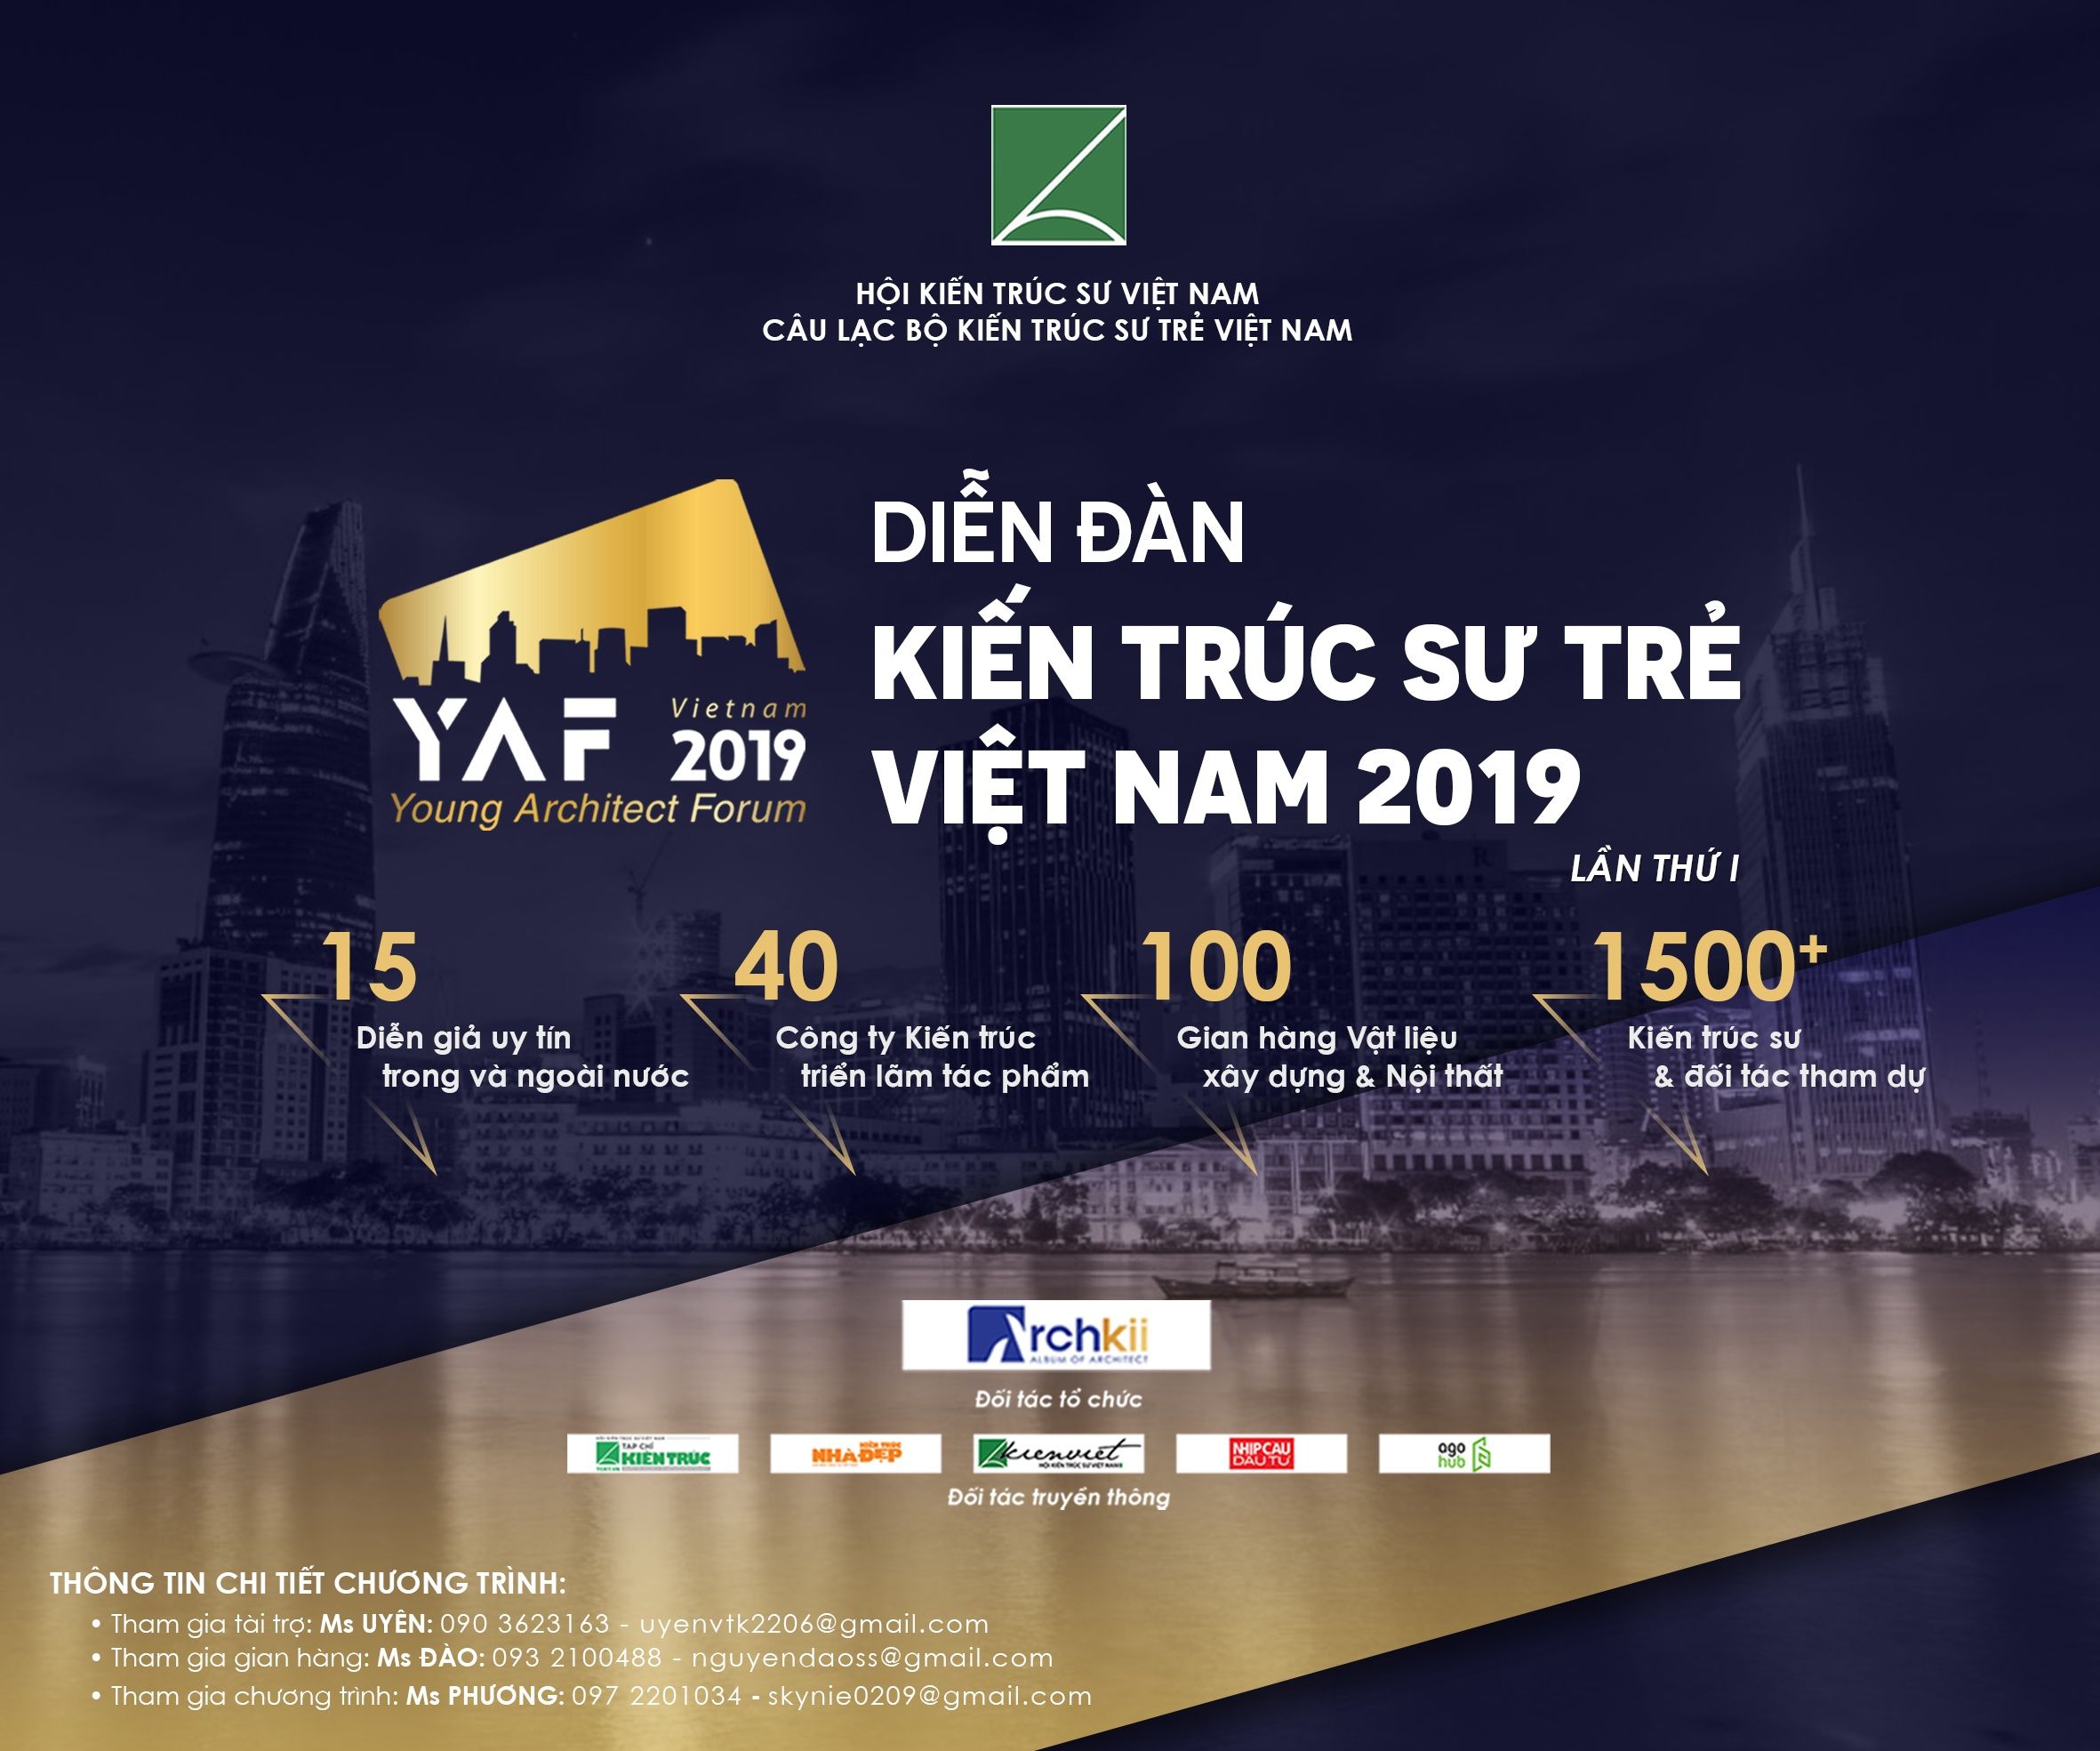 YAF 2019 , Diễn đàn Kiến trúc sư trẻ Việt Nam, "Sân chơi" của các KTS "trẻ"